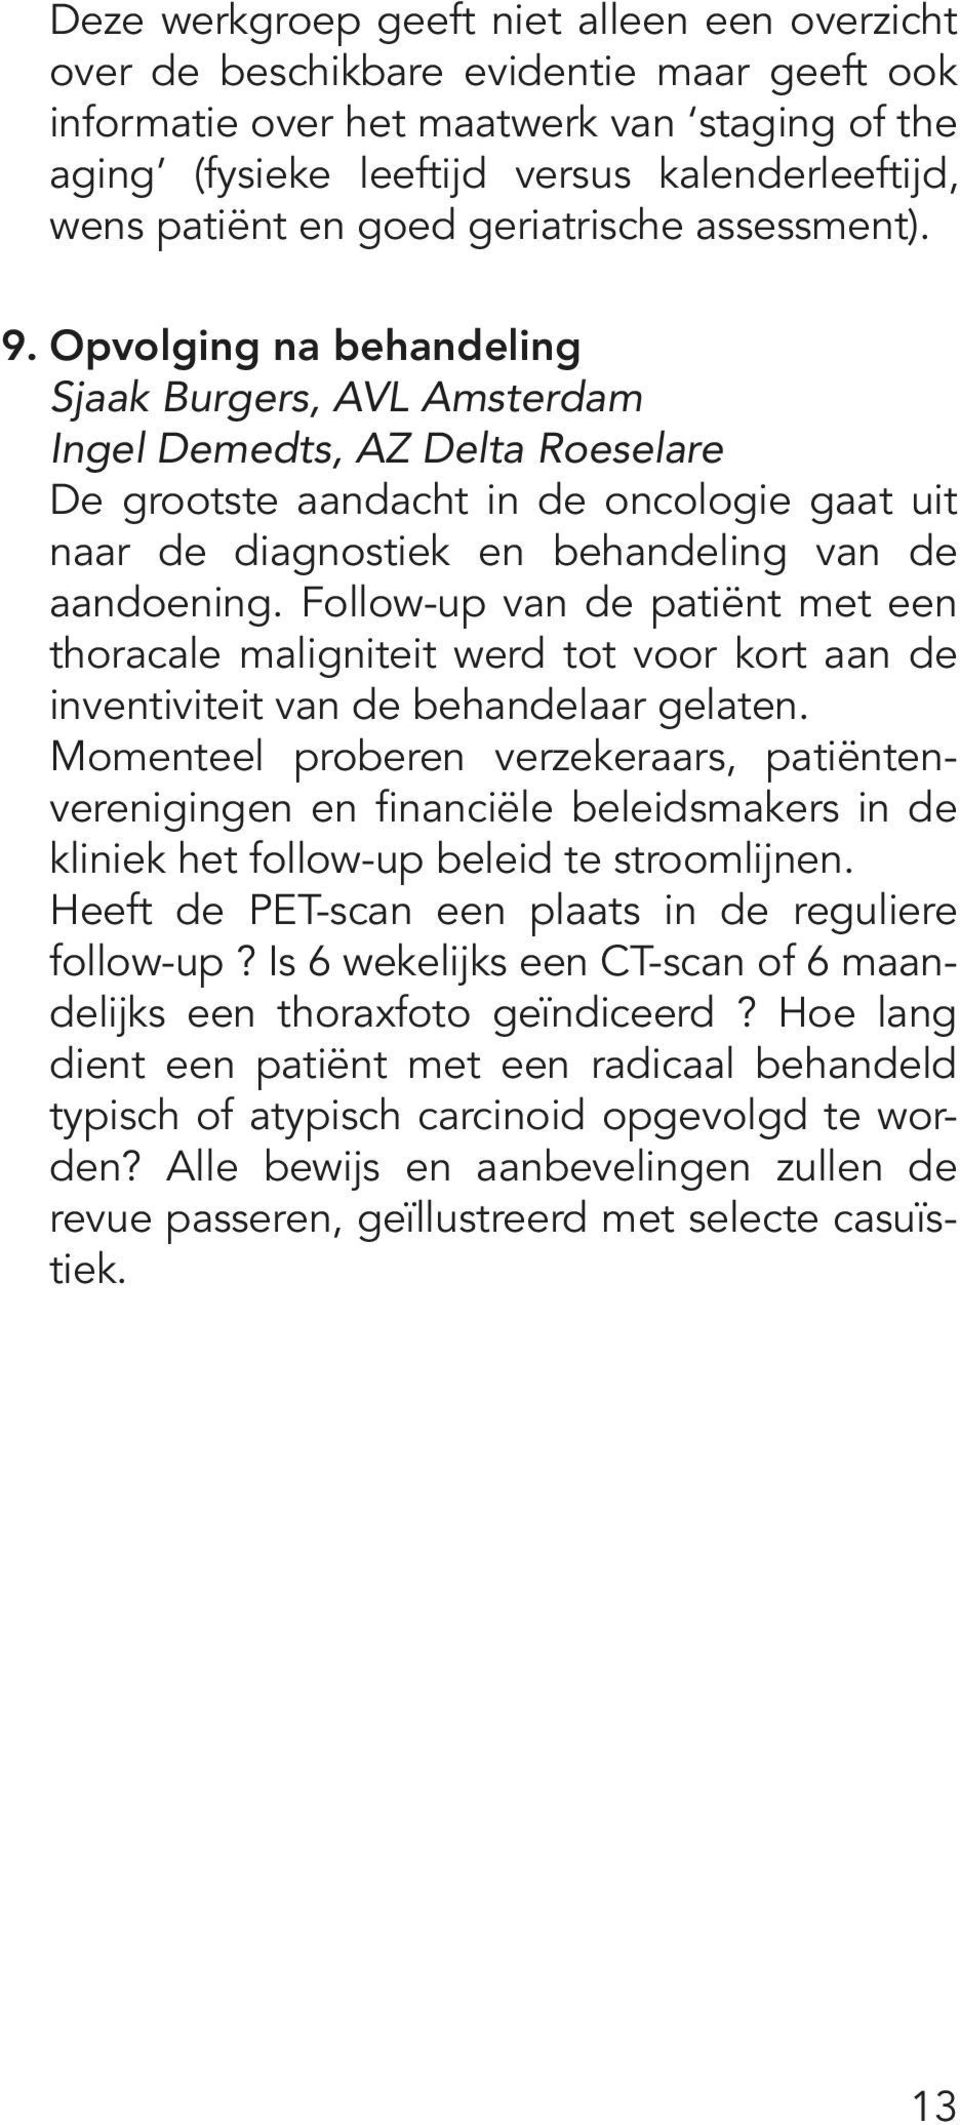 Opvolging na behandeling Sjaak Burgers, AVL Amsterdam Ingel Demedts, AZ Delta Roeselare De grootste aandacht in de oncologie gaat uit naar de diagnostiek en behandeling van de aandoening.